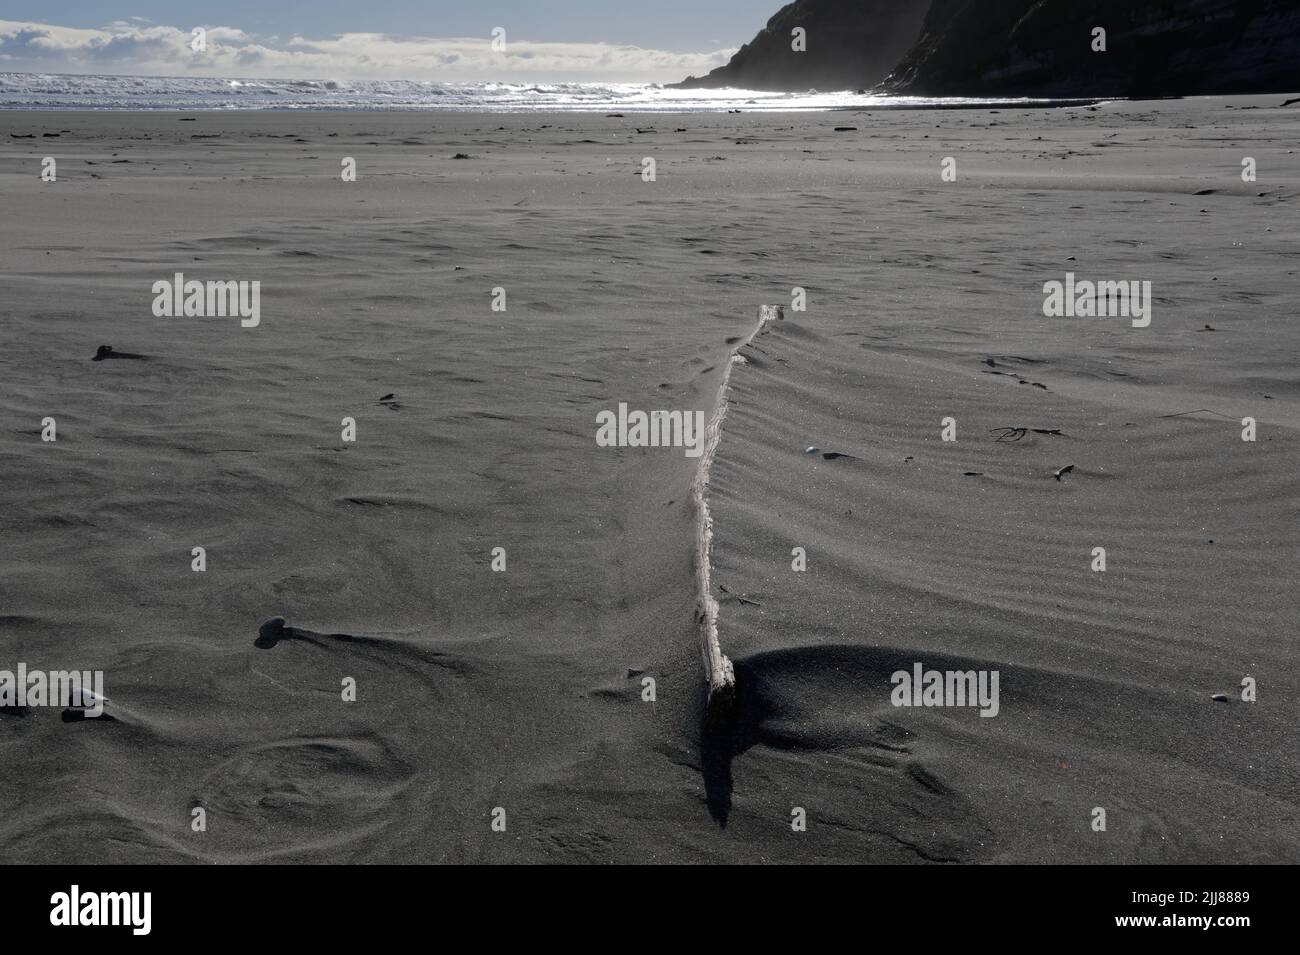 La arena se ha acumulado en un pedazo grande de madera de deriva en una playa. Los patrones del viento se muestran alrededor de las piedras en la arena. Foto de stock